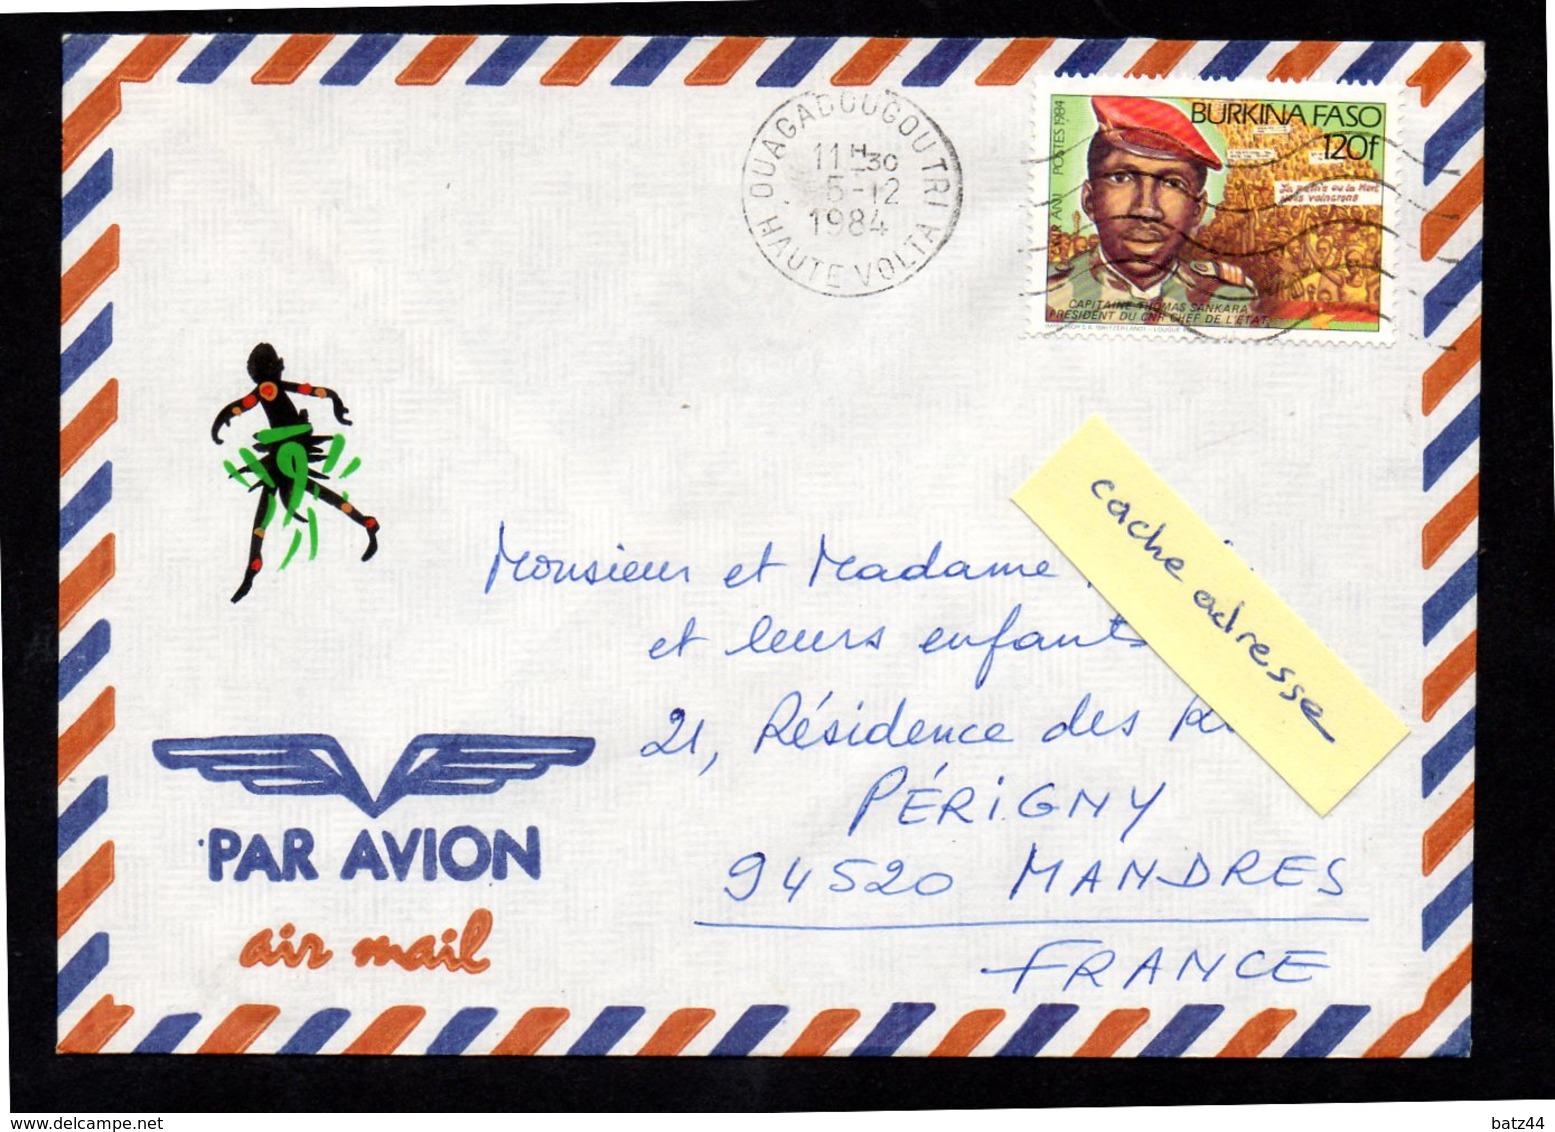 BURKINA FASO Enveloppe Cover Ouagadougou Tri 05 12 1984 - Burkina Faso (1984-...)